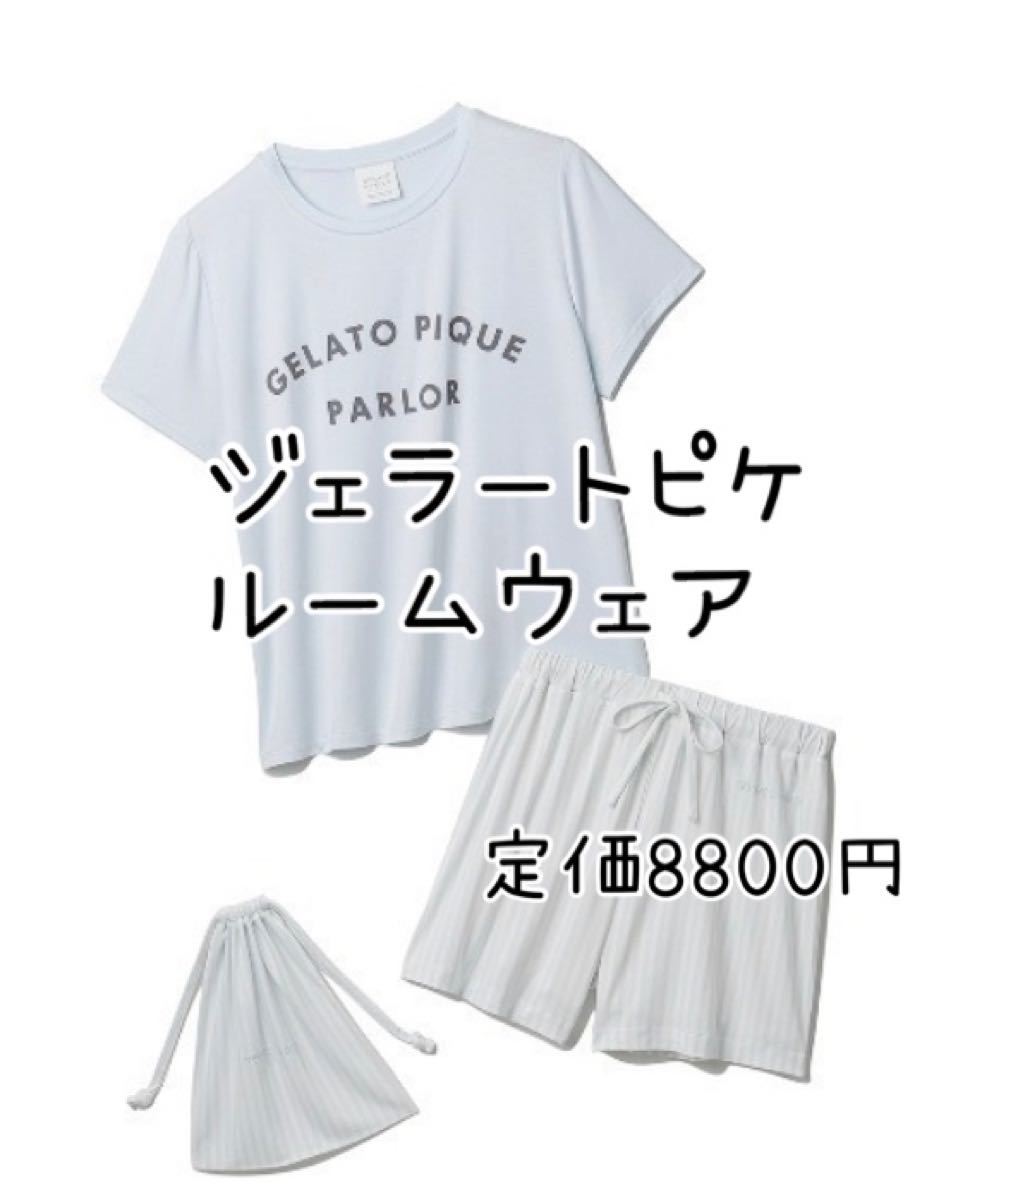 新品HOT gelato pique - ジェラートピケ Tシャツ&ショートパンツ&巾着3